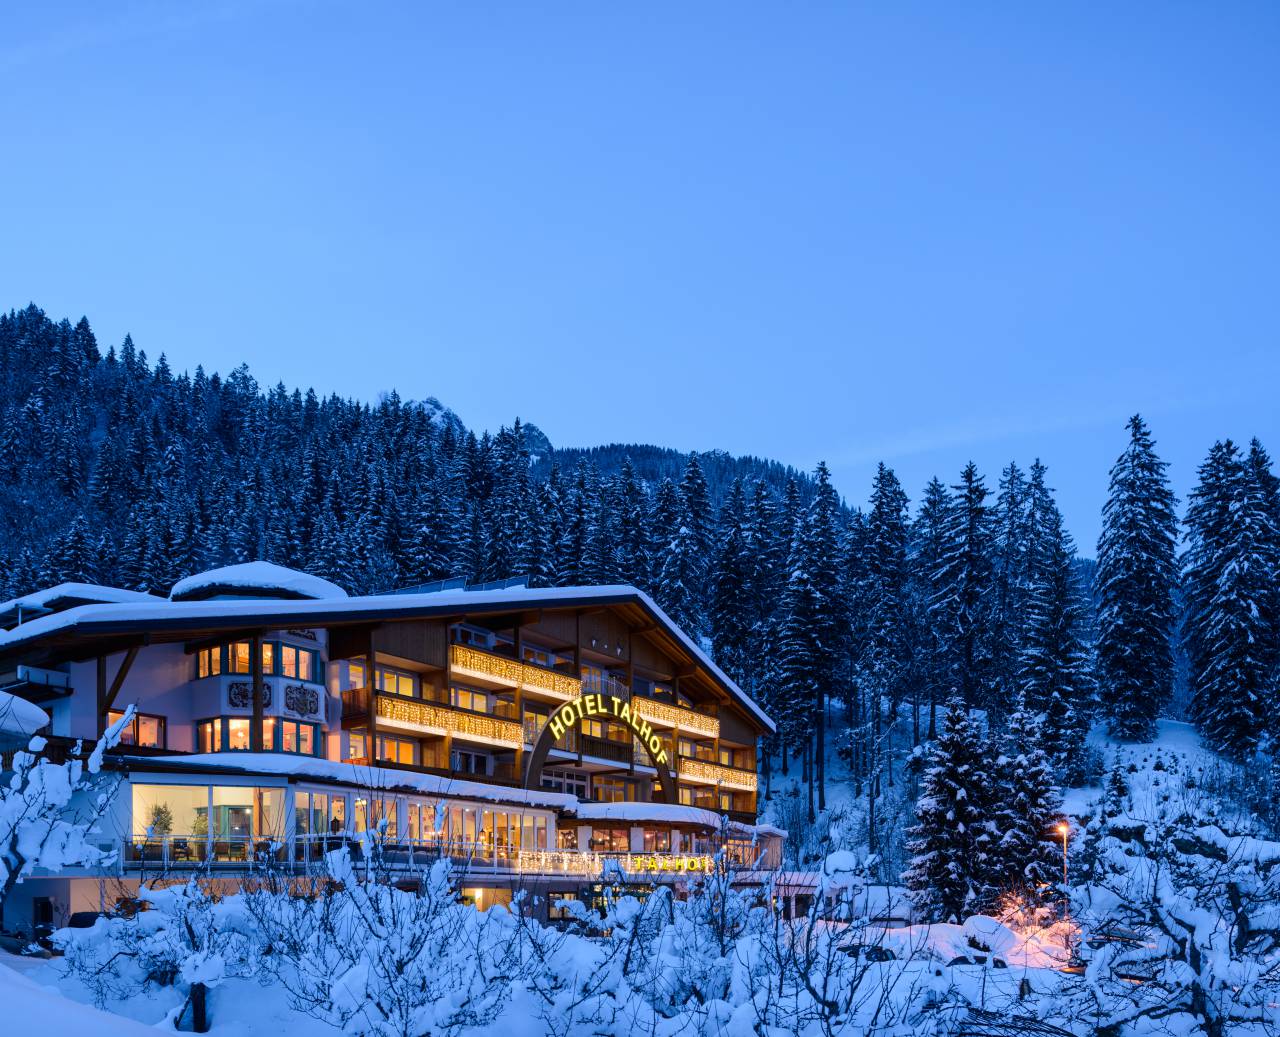 Beschneites Panoramahotel Talhof im Wald in den Bergen bei Abenddämmerung